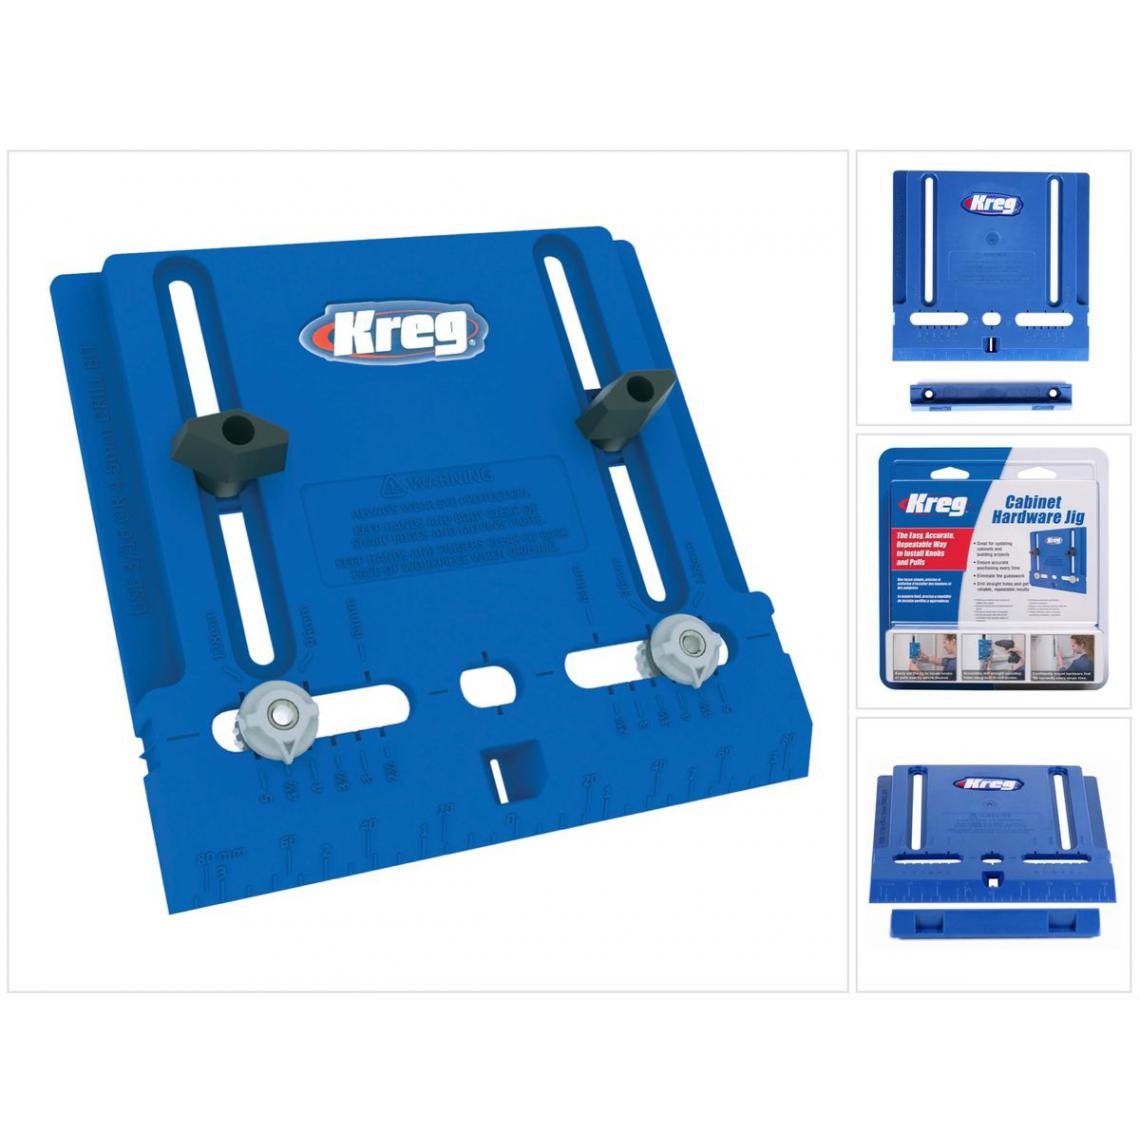 Kreg - KREG Cabinet Hardware Jig Gabarit de perçage pour poignées de meubles ( KHI-PULL ) pour la construction de meubles et les portes d'armoires - Autres équipements modulaires